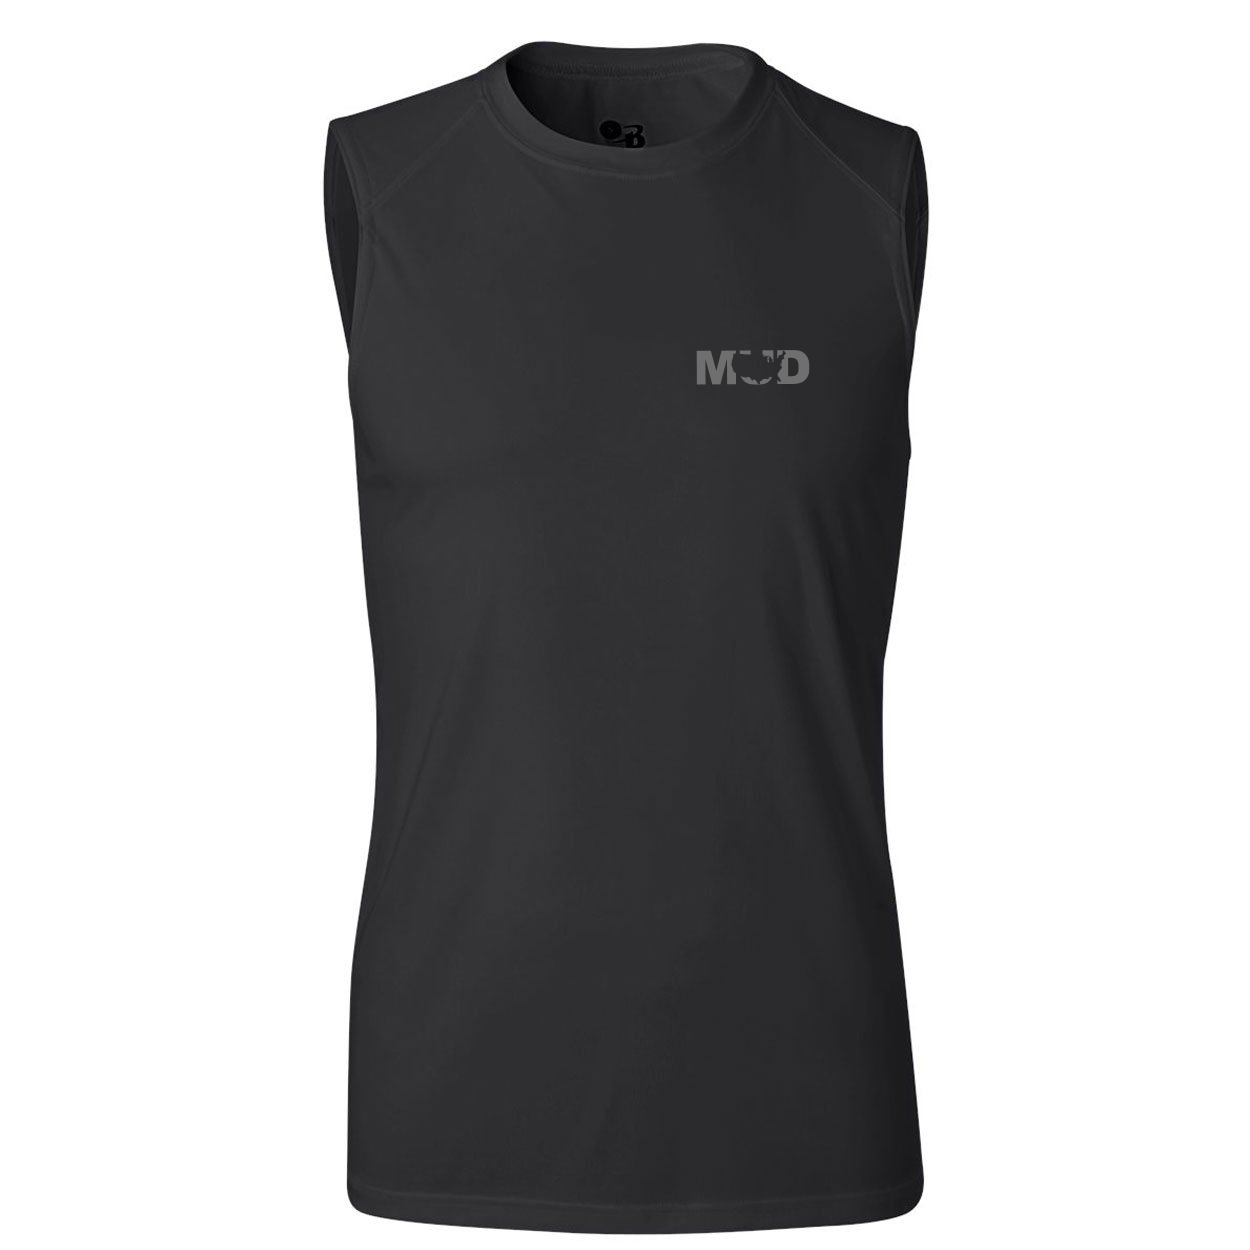 Mud United States Night Out Unisex Performance Sleeveless T-Shirt Black (Gray Logo)